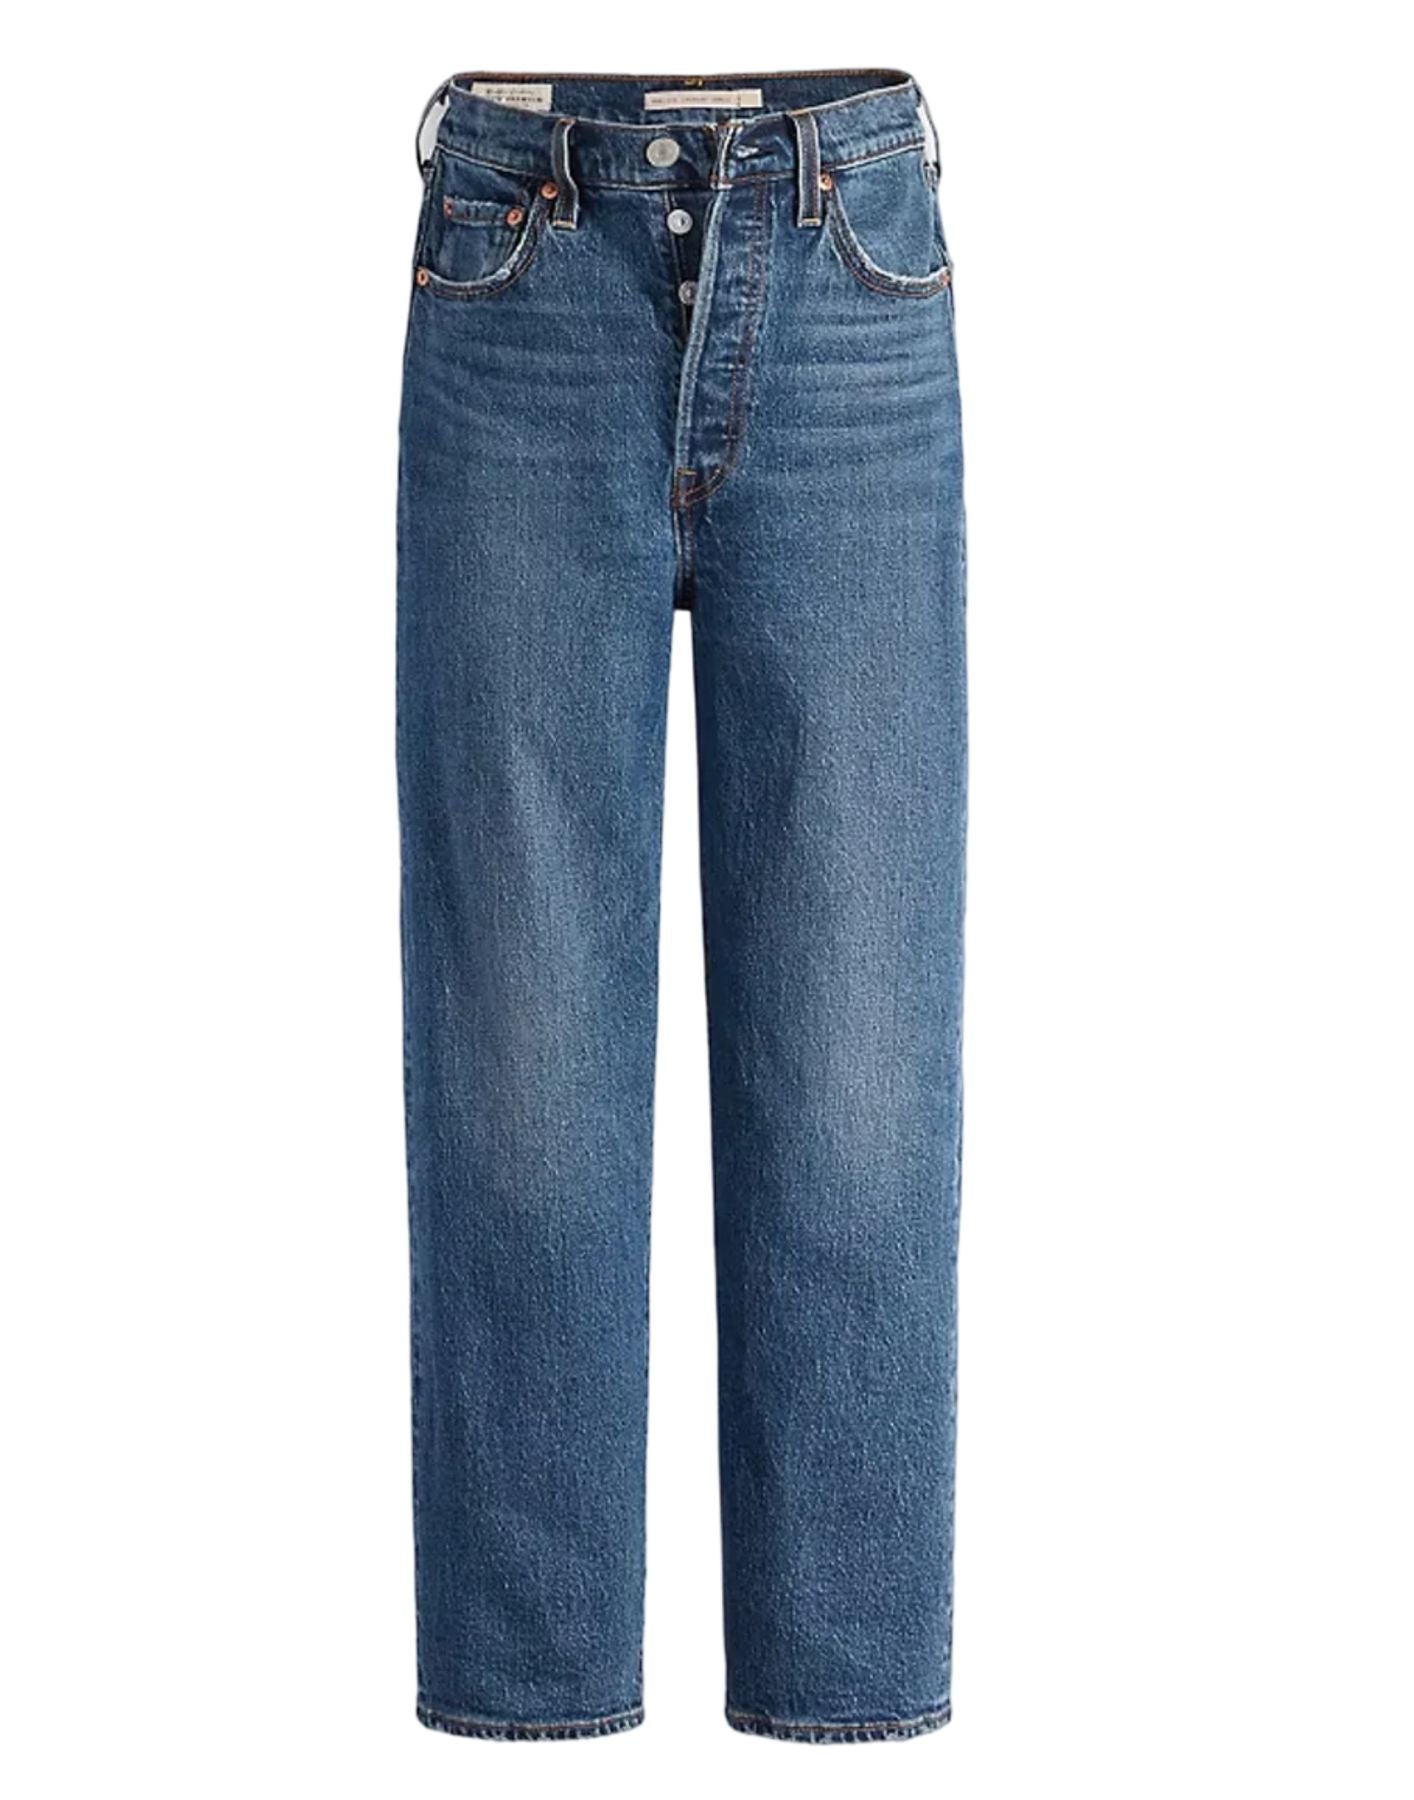 Jeans pour femme 726930163 Valley View Levi's